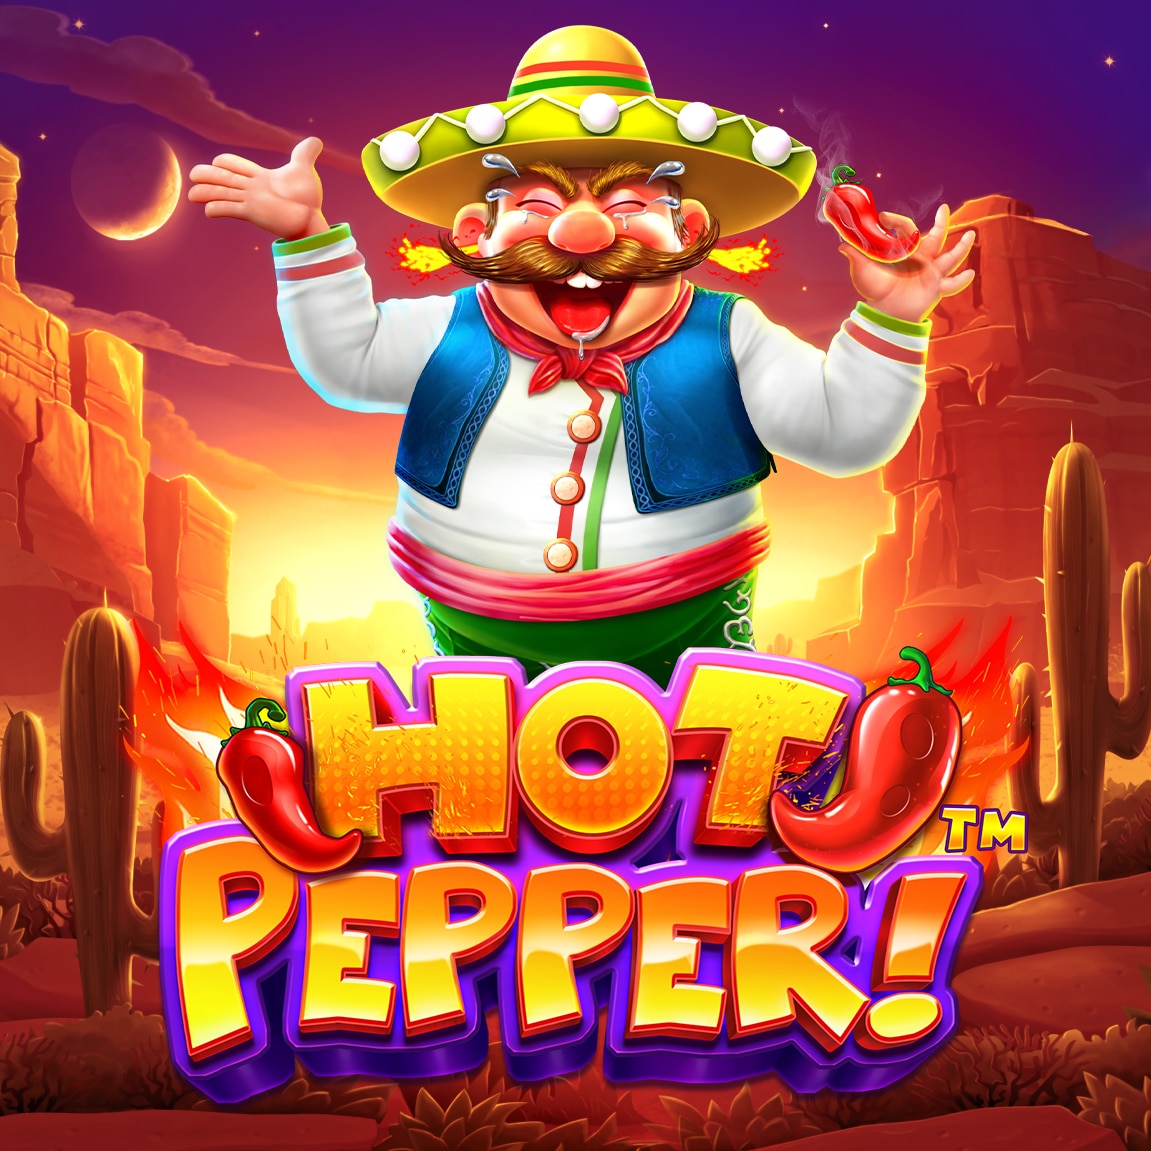 Hot Pepper Slot Logo